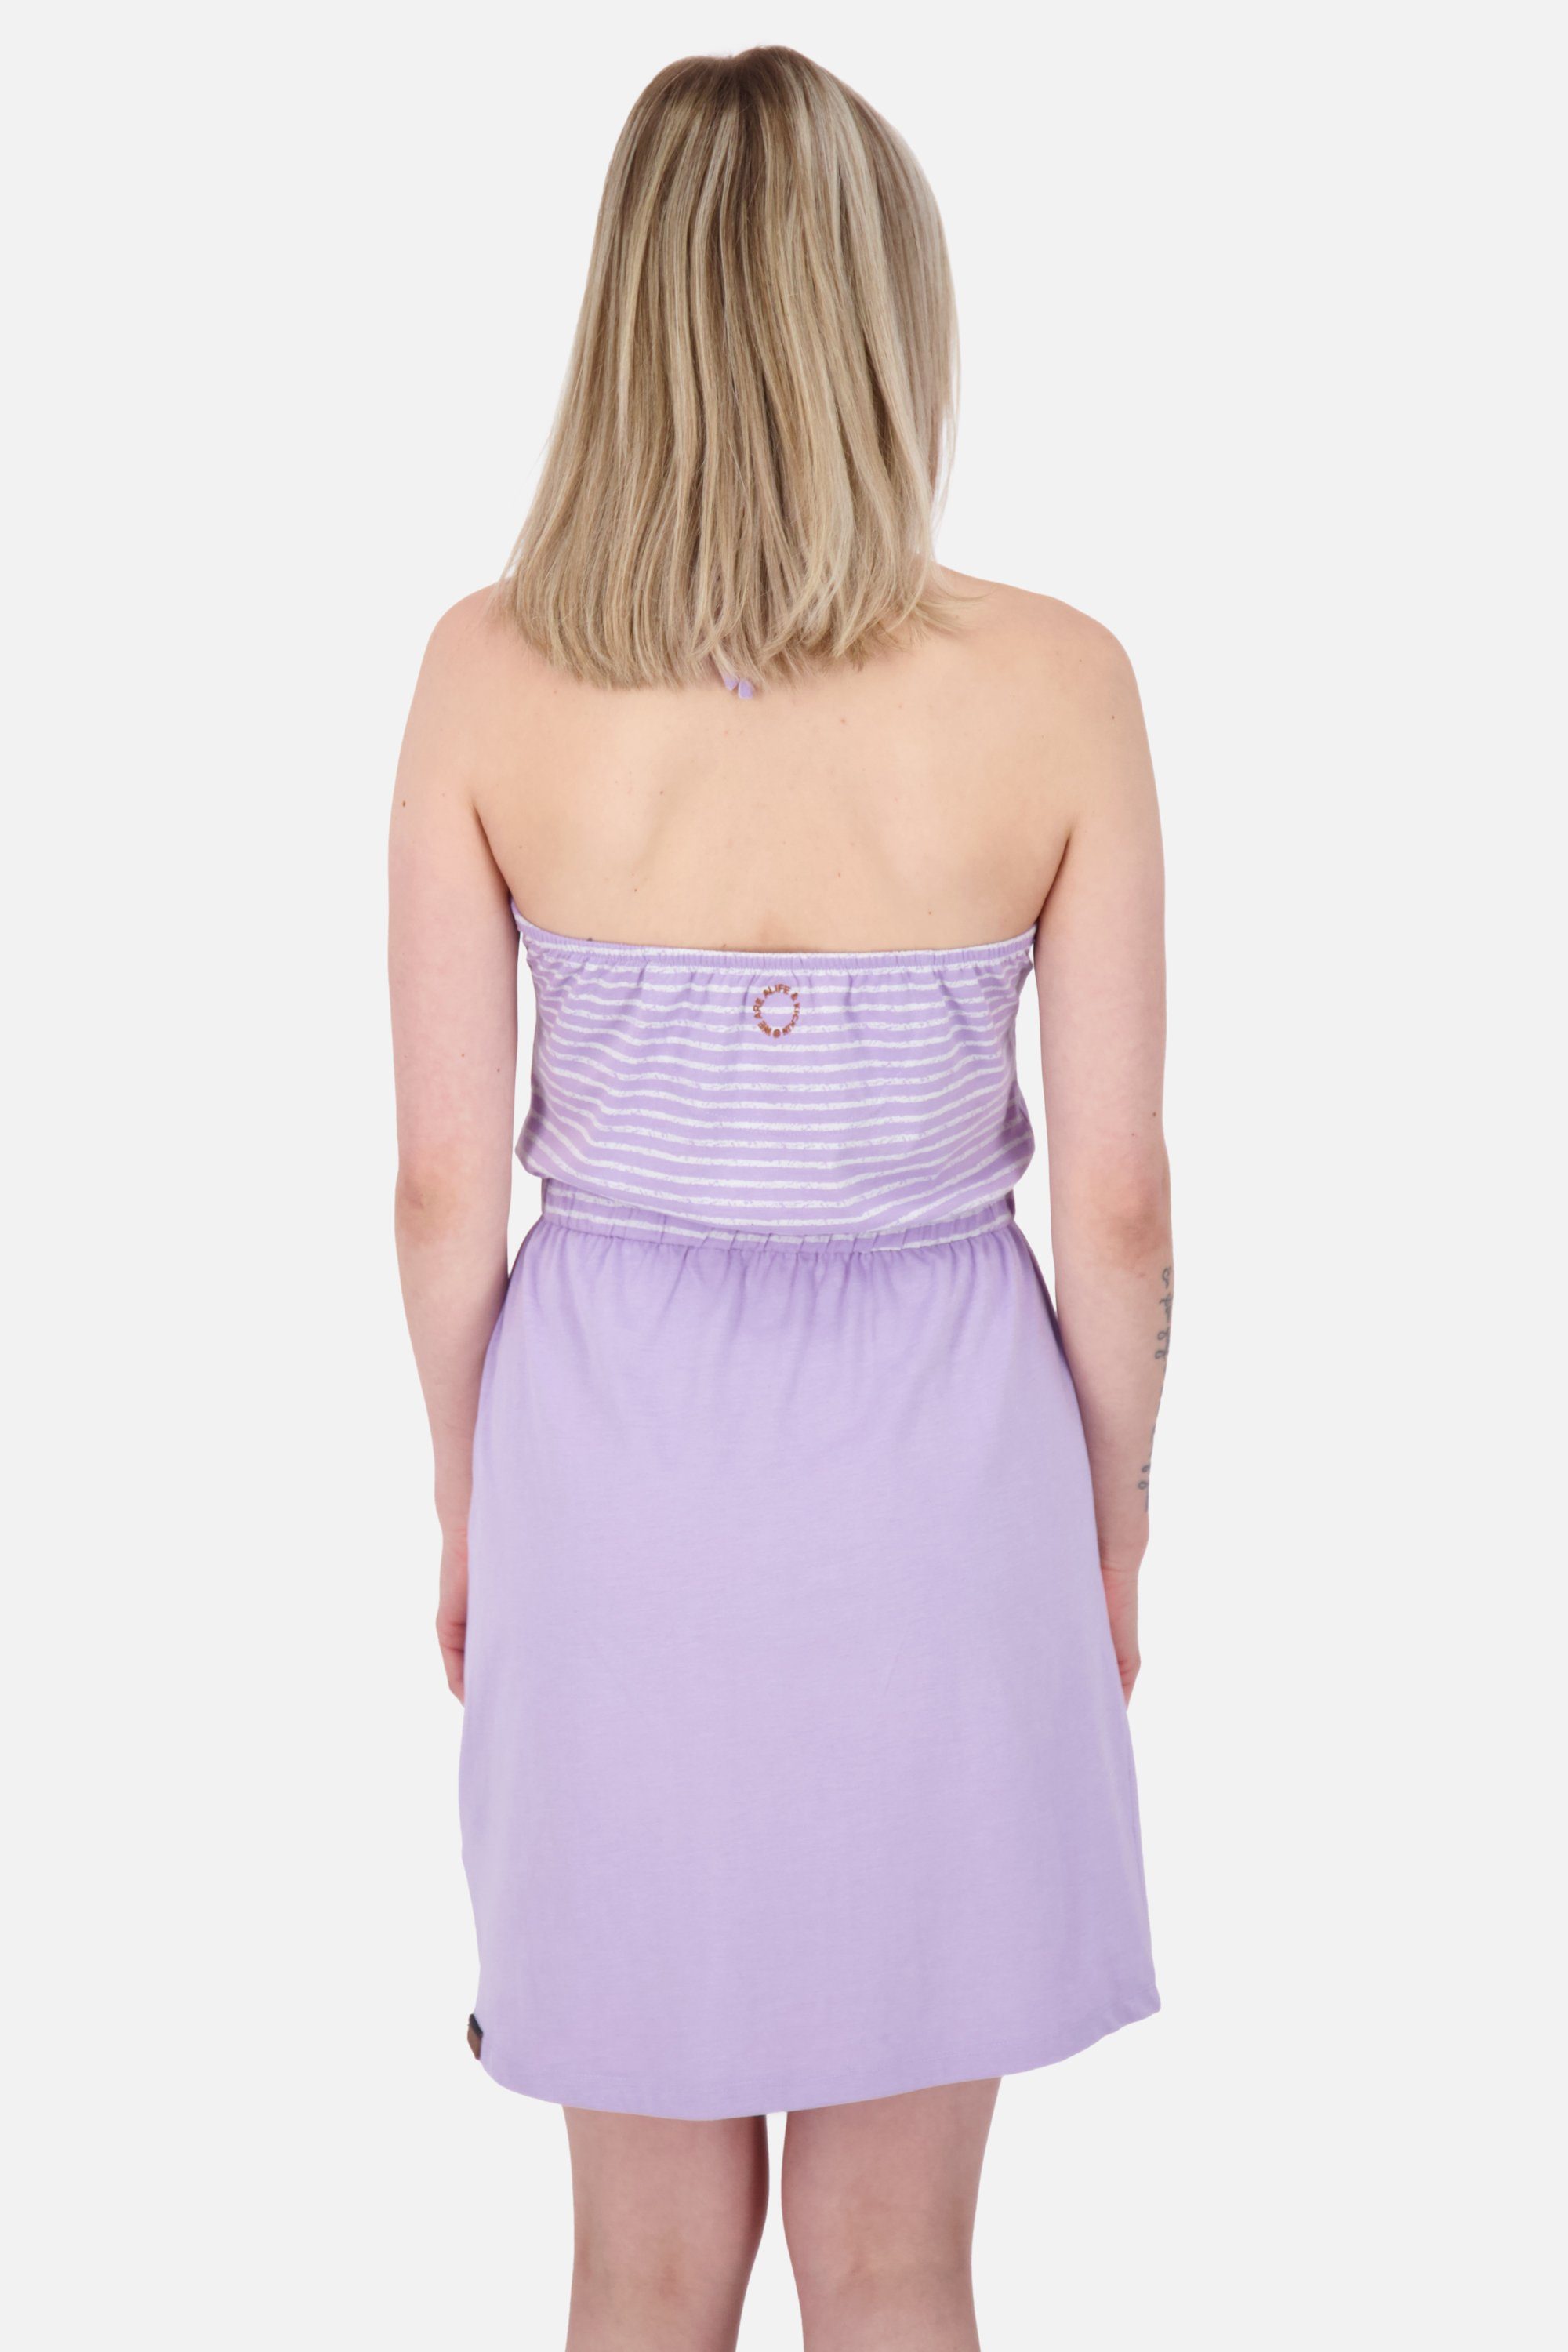 Alife & Kickin digital Z Dress VerenaAK lavender Sommerkleid Sleeveless Kleid Damen Sommerkleid